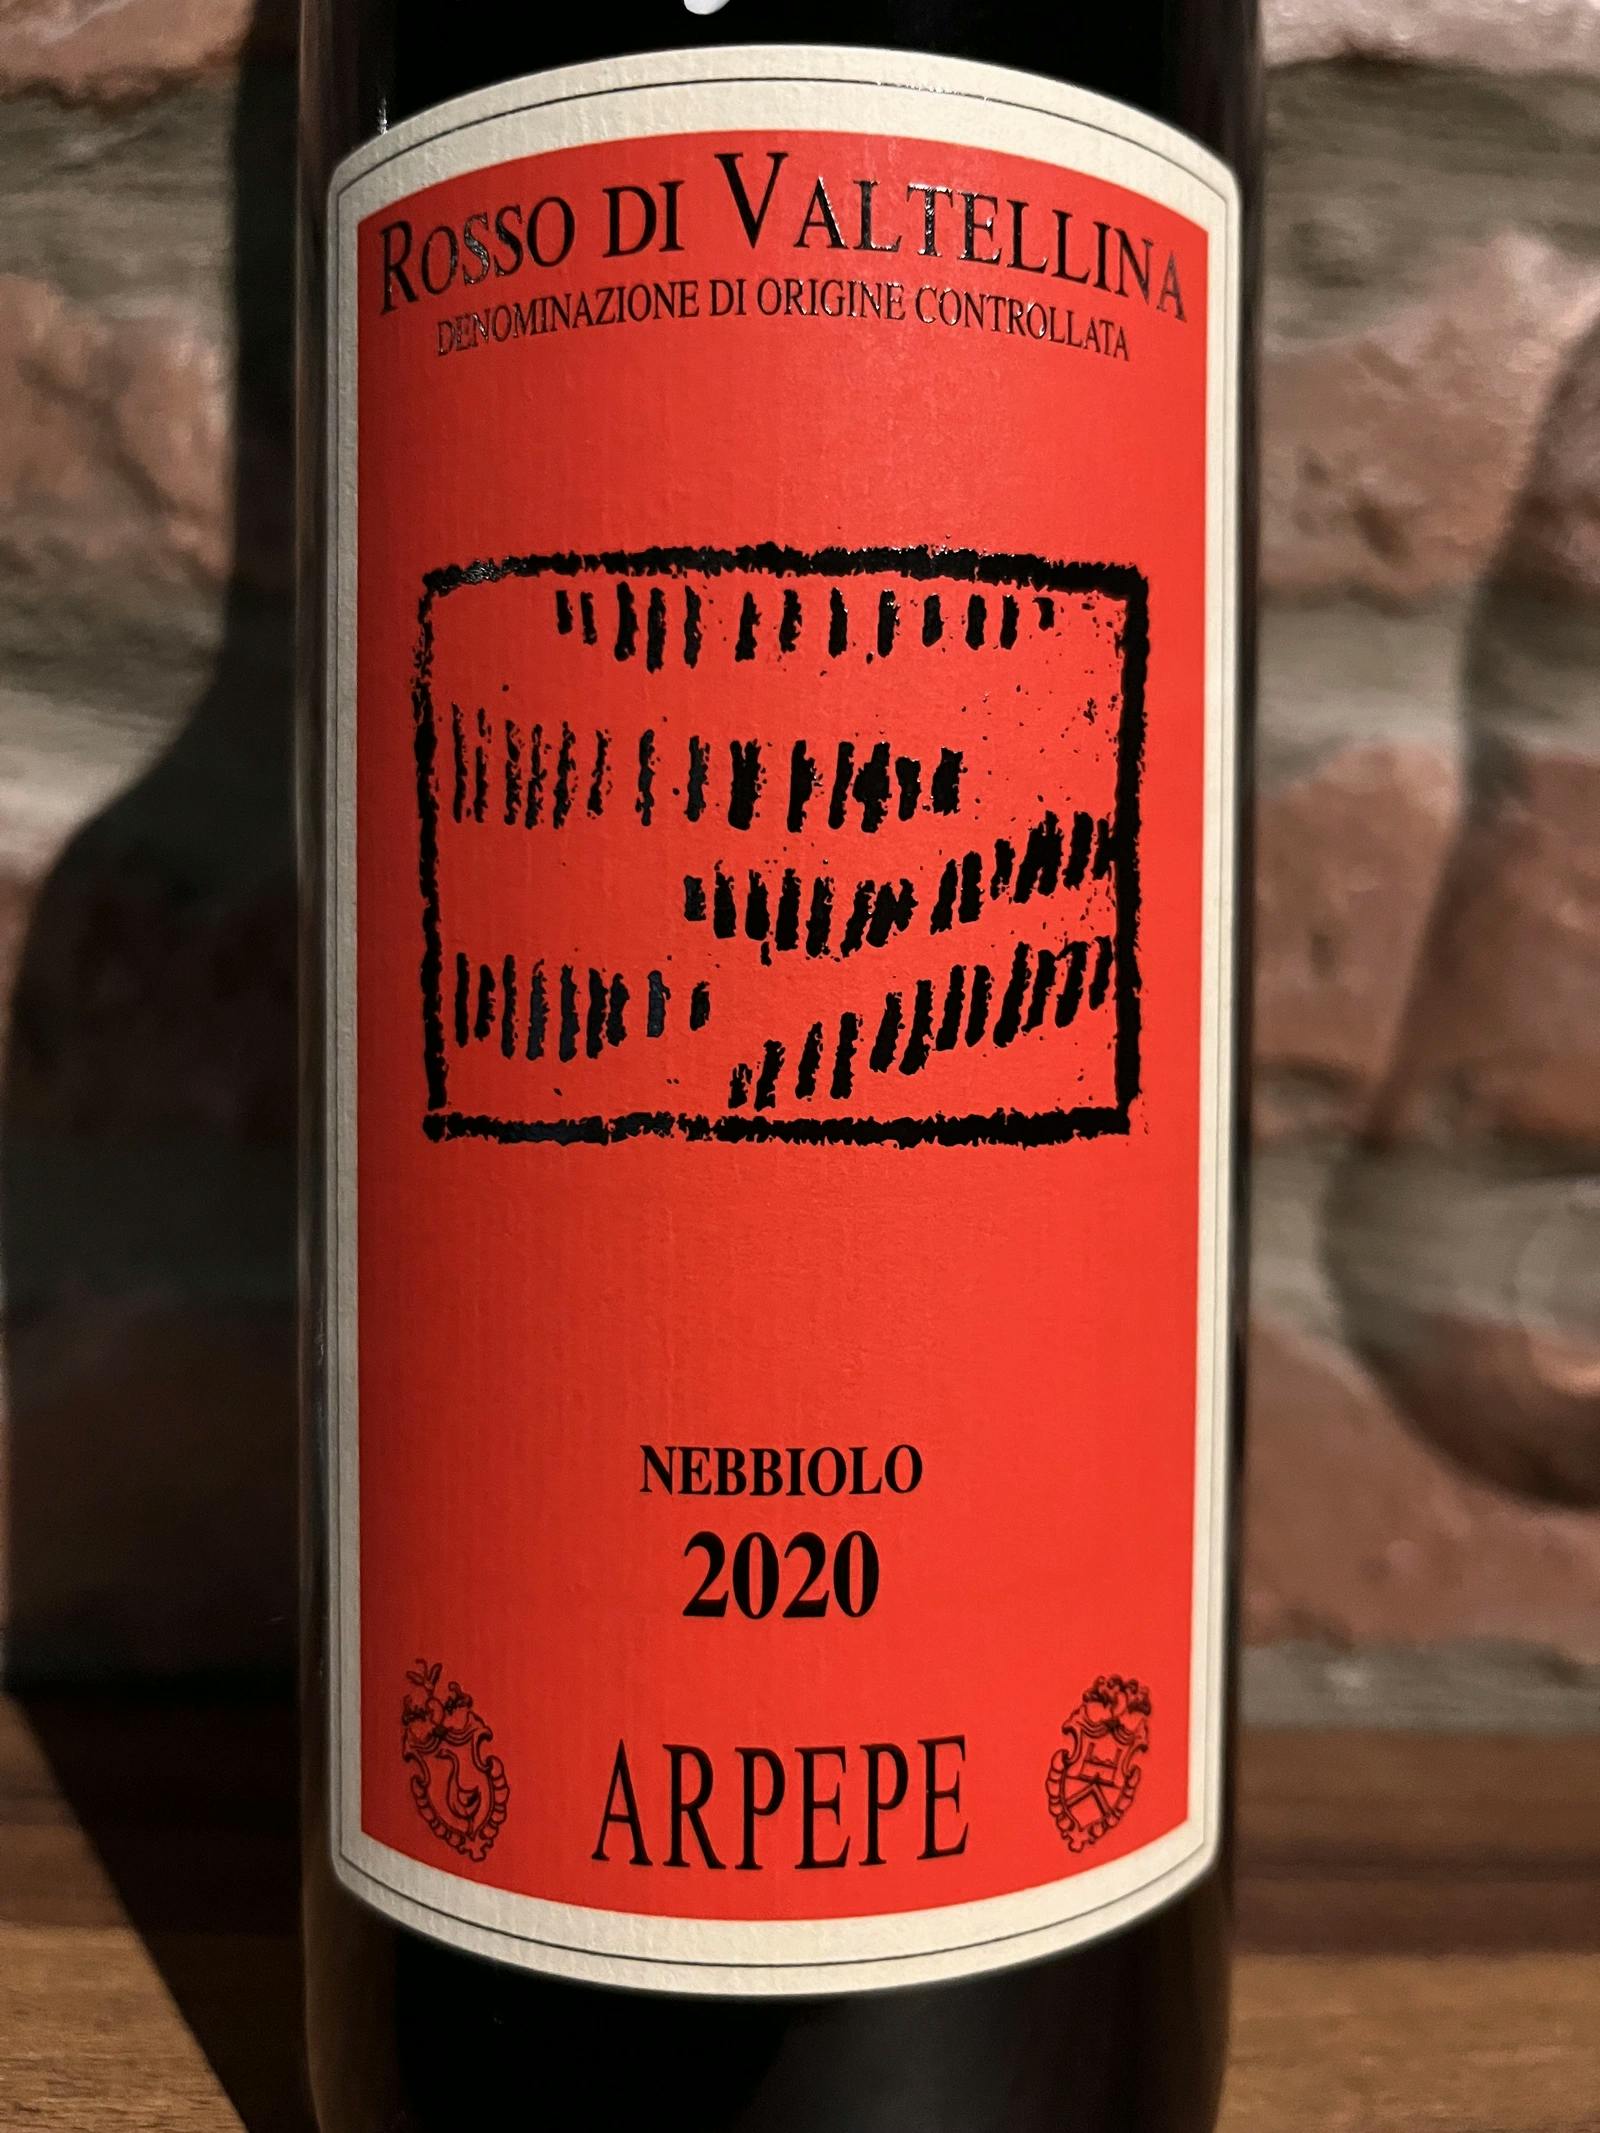 Arpepe Rosso di Valtellina Nebbiolo 2020